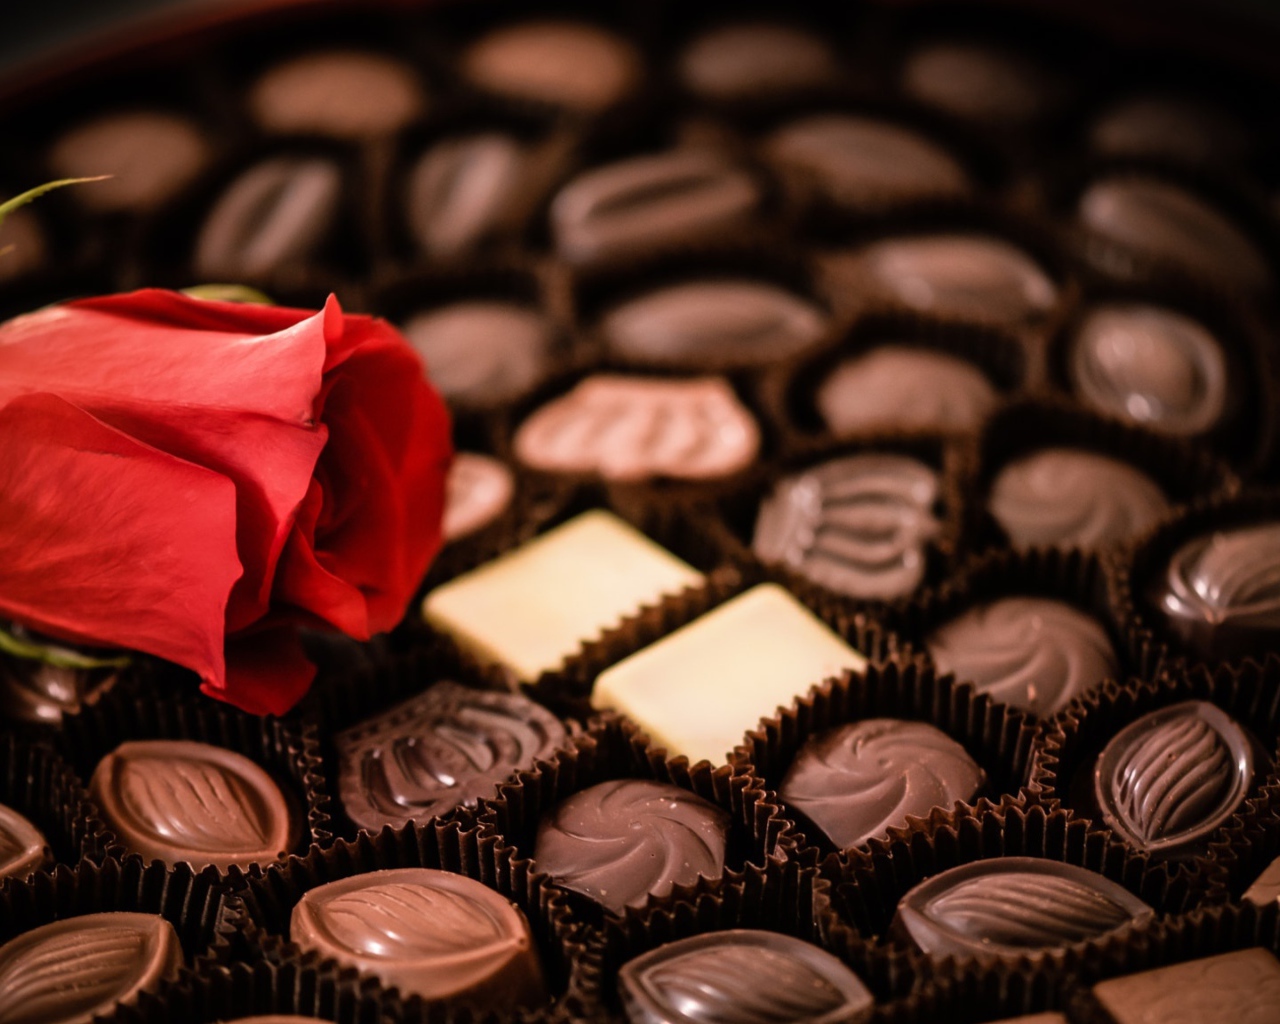 Красная роза лежит на коробке с шоколадными конфетами ассорти 